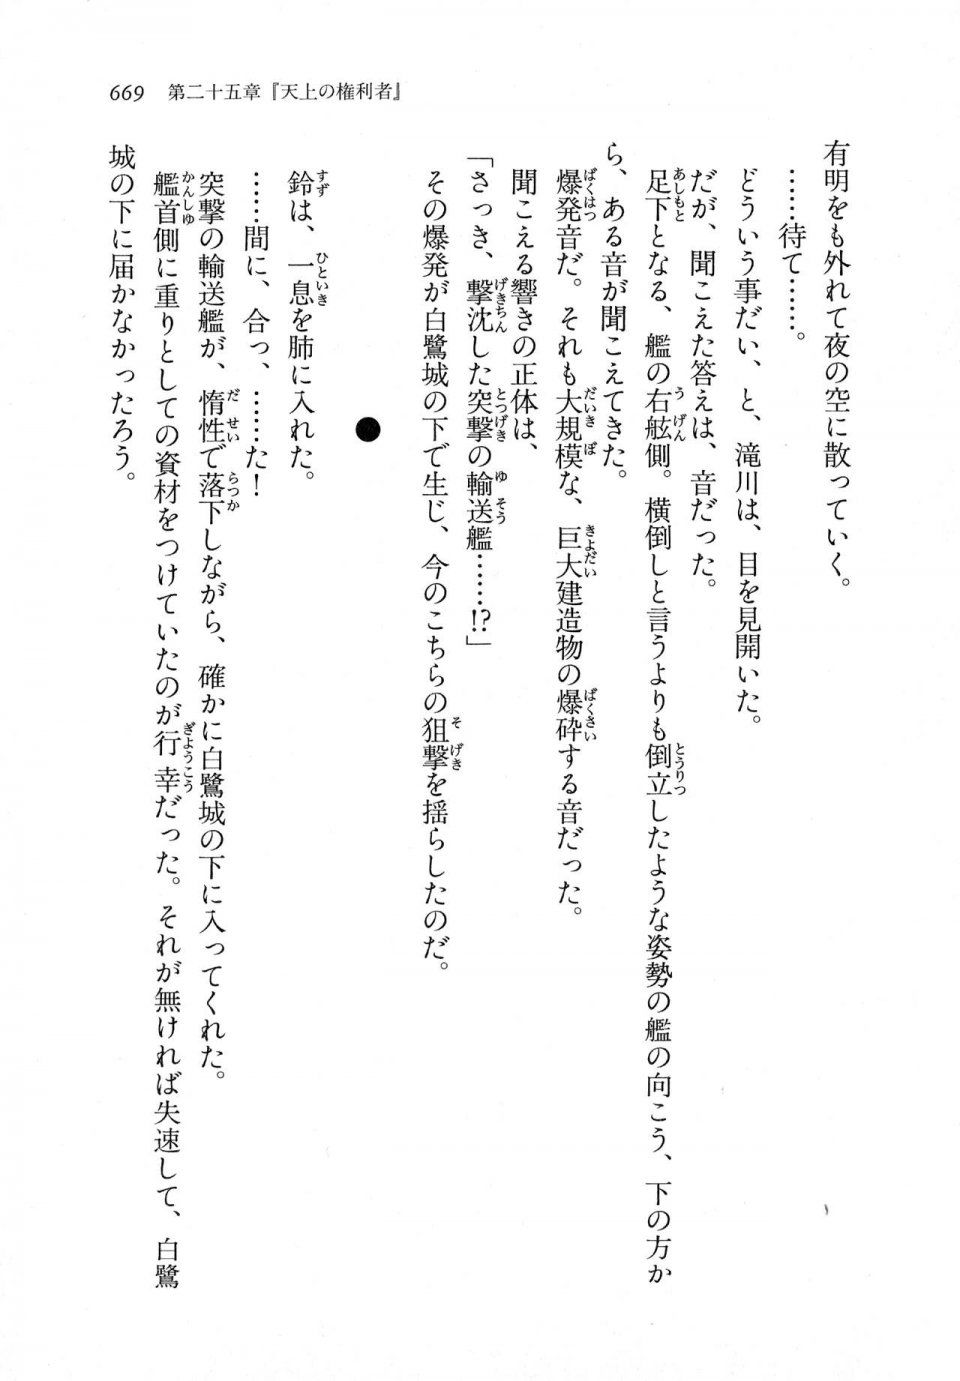 Kyoukai Senjou no Horizon LN Vol 11(5A) - Photo #669